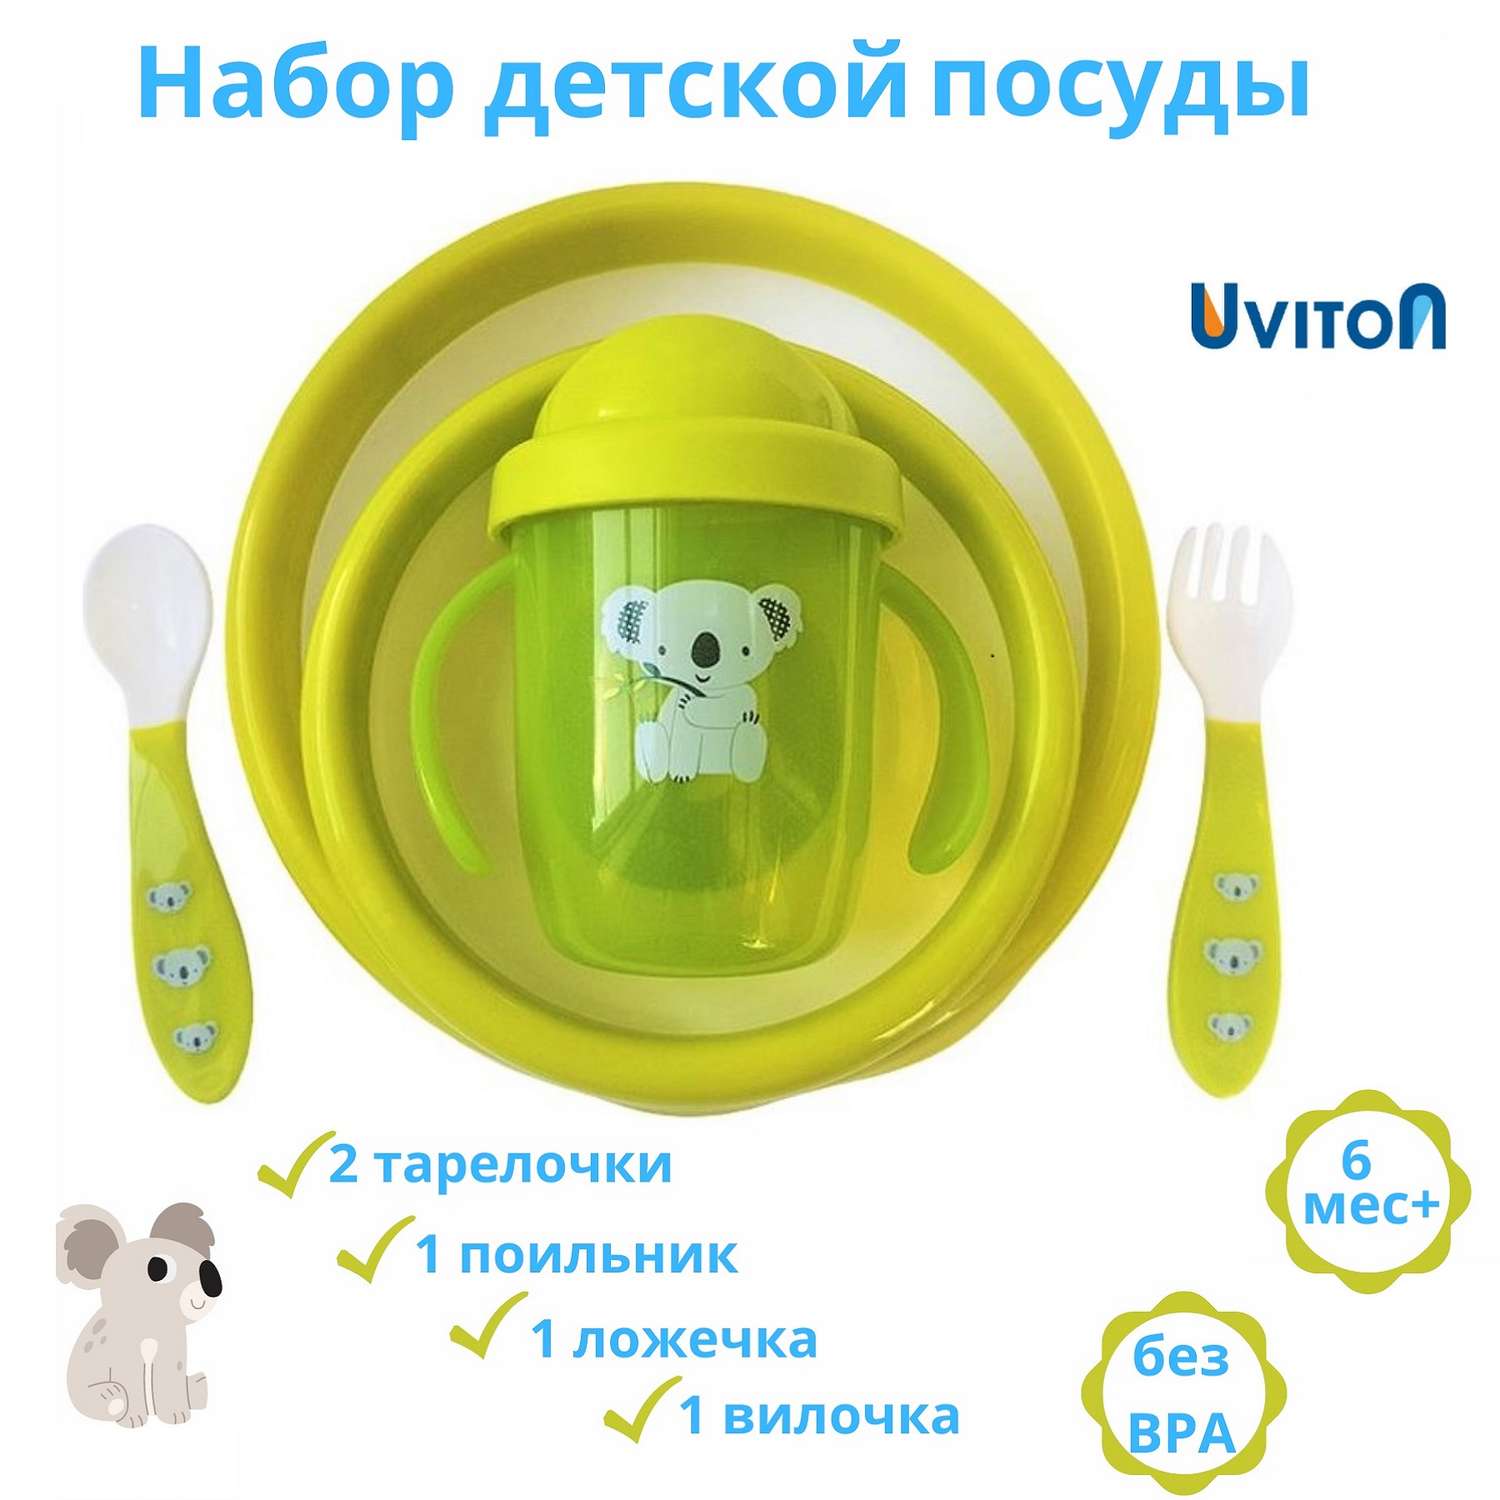 Набор детской посуды Uviton 5 предметов Зеленый 0144/02 - фото 2